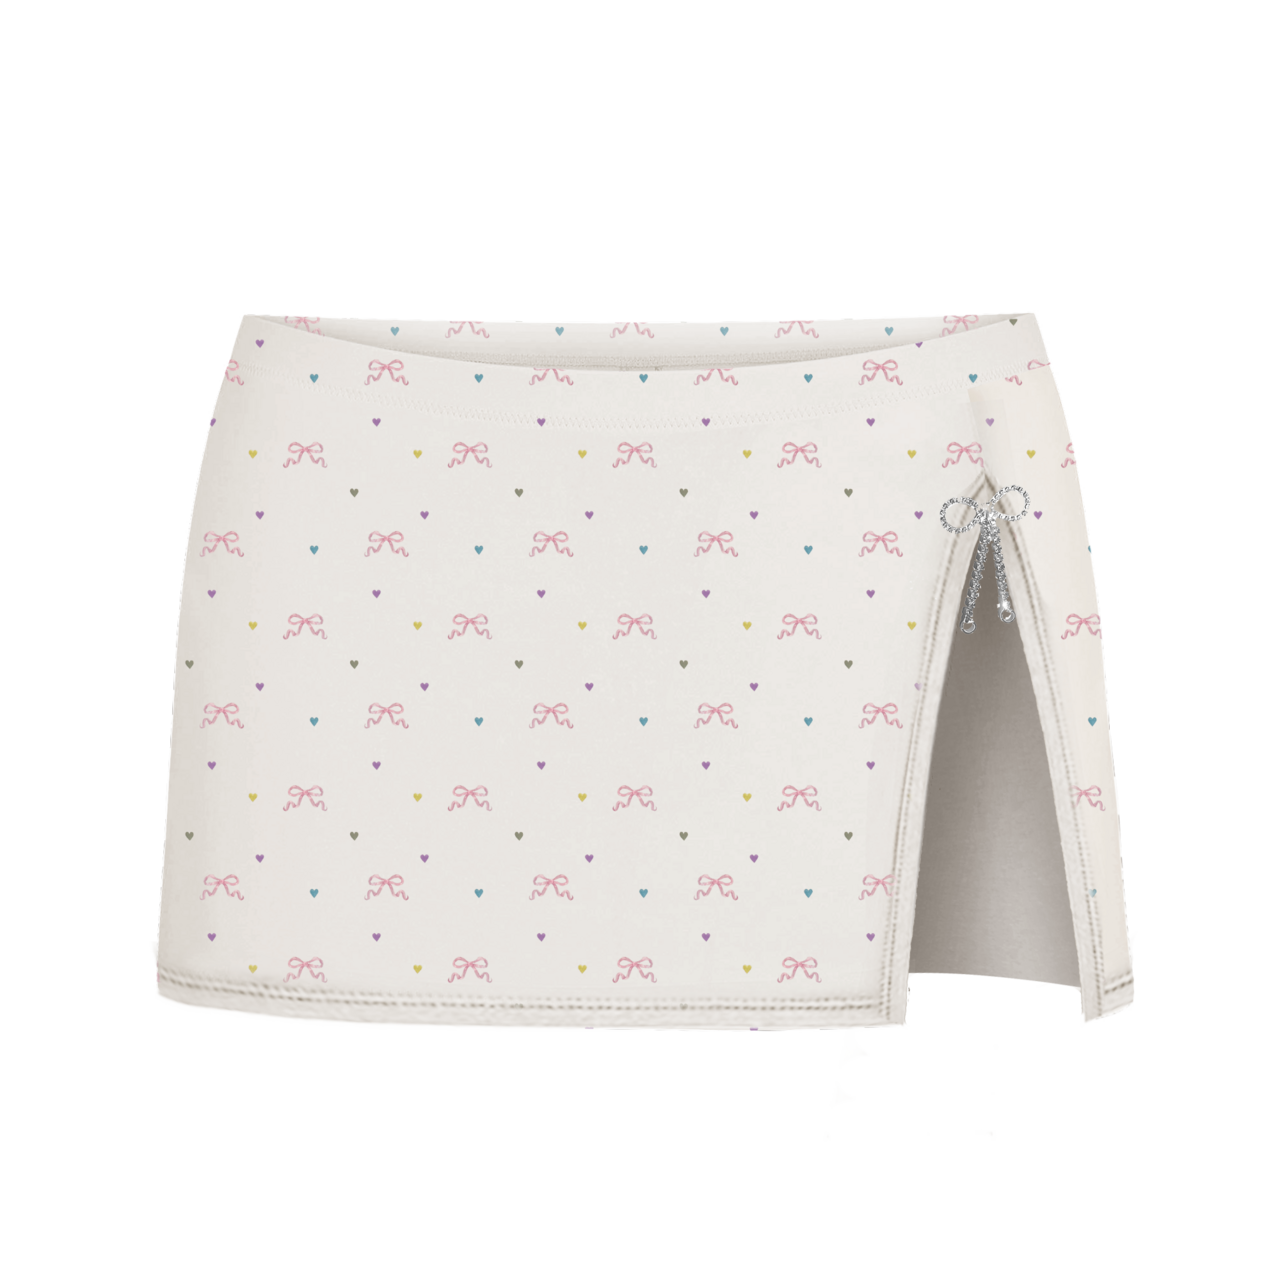 Lana Del Rey - Mini Skirt in Flower Print